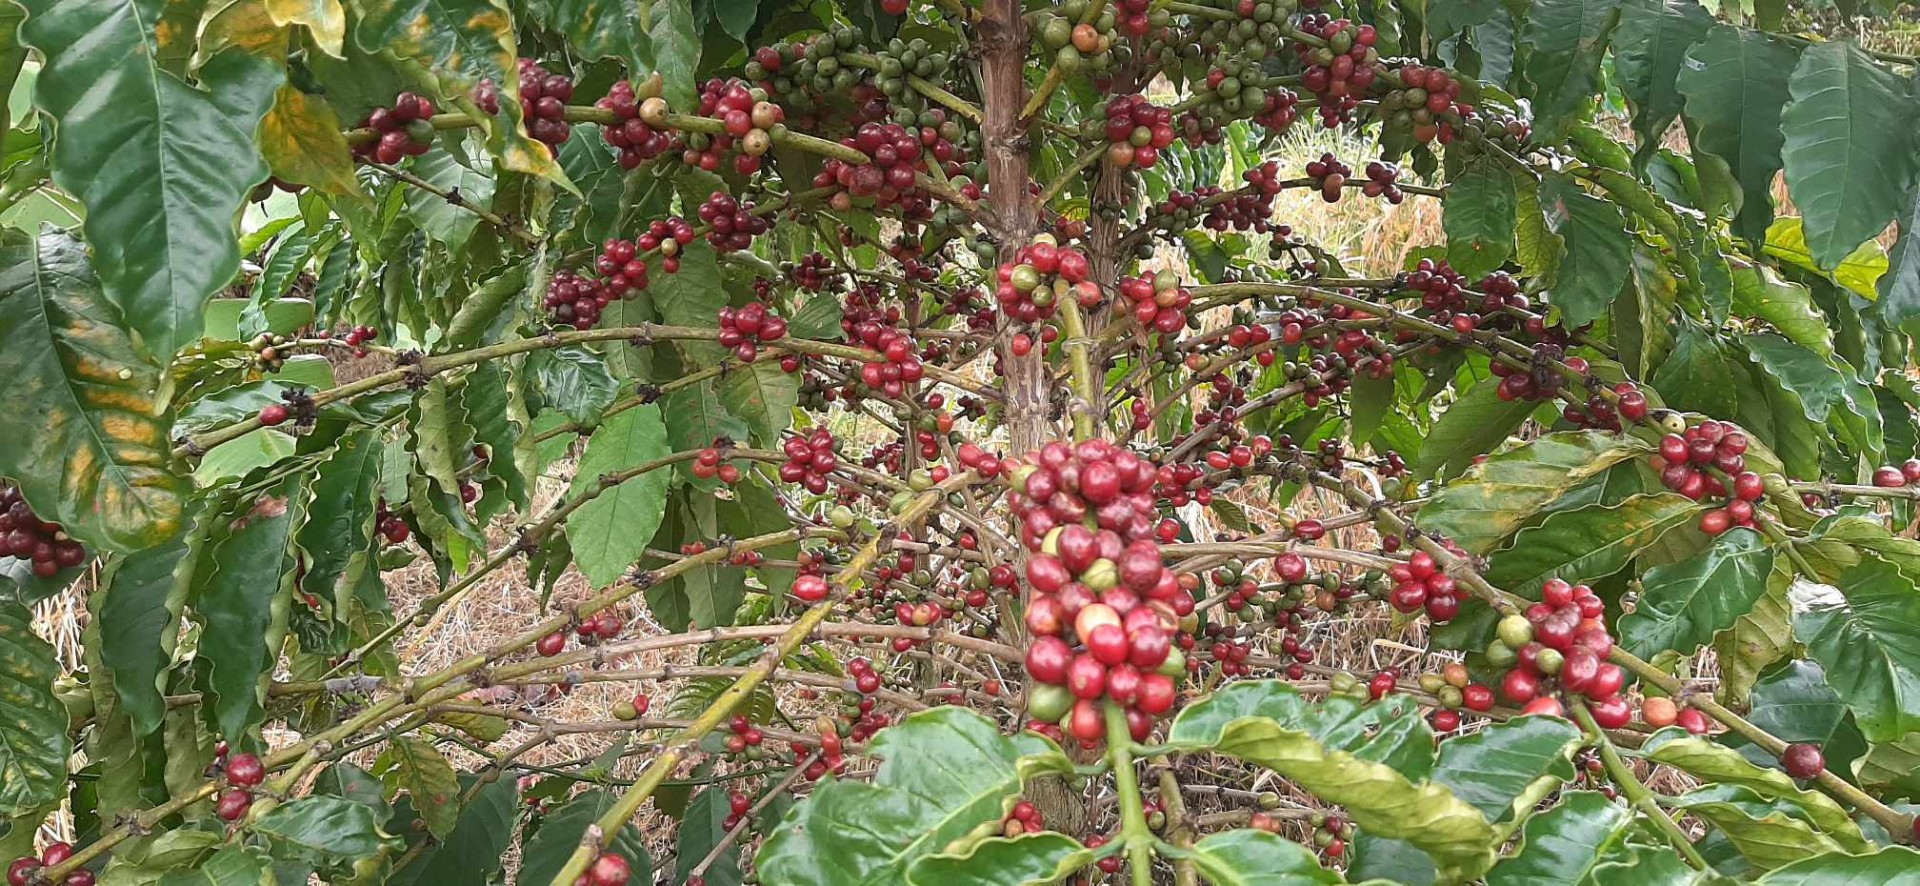 Lâm Đồng khuyến cáo người dân không thu hái quả cà phê xanh, non